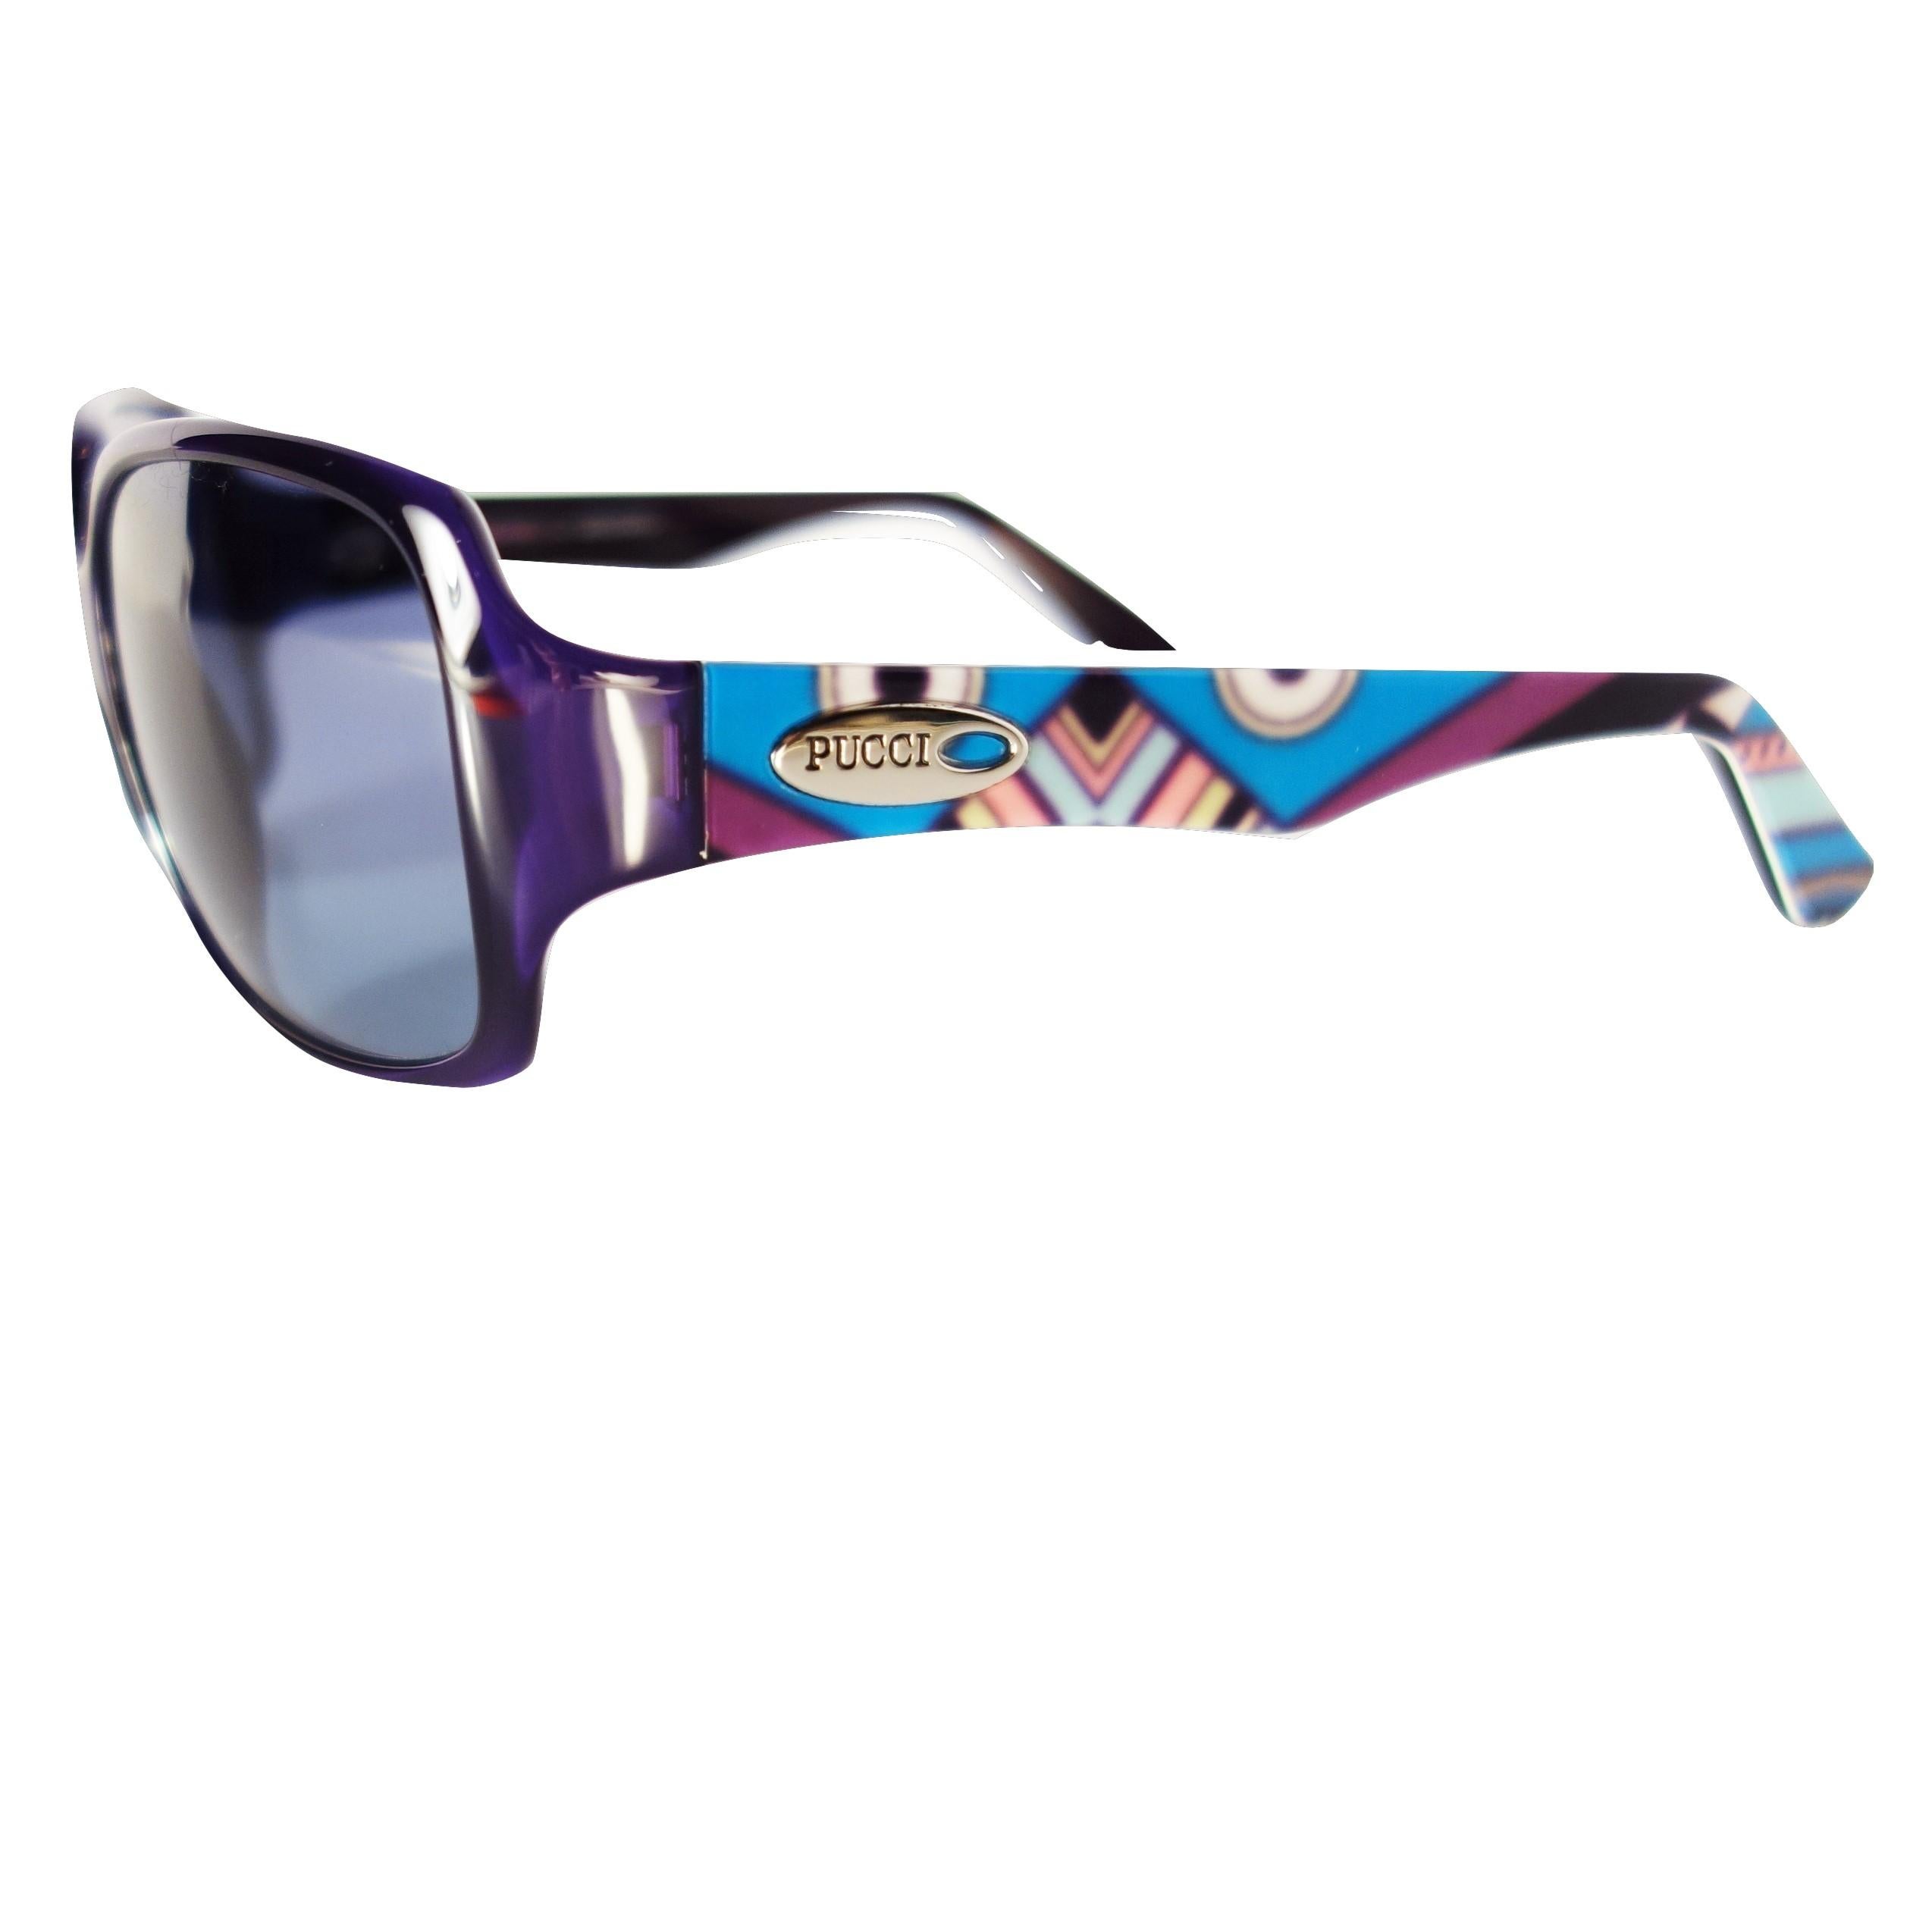 New Emilio Pucci Purple Logo Sunglasses With Case